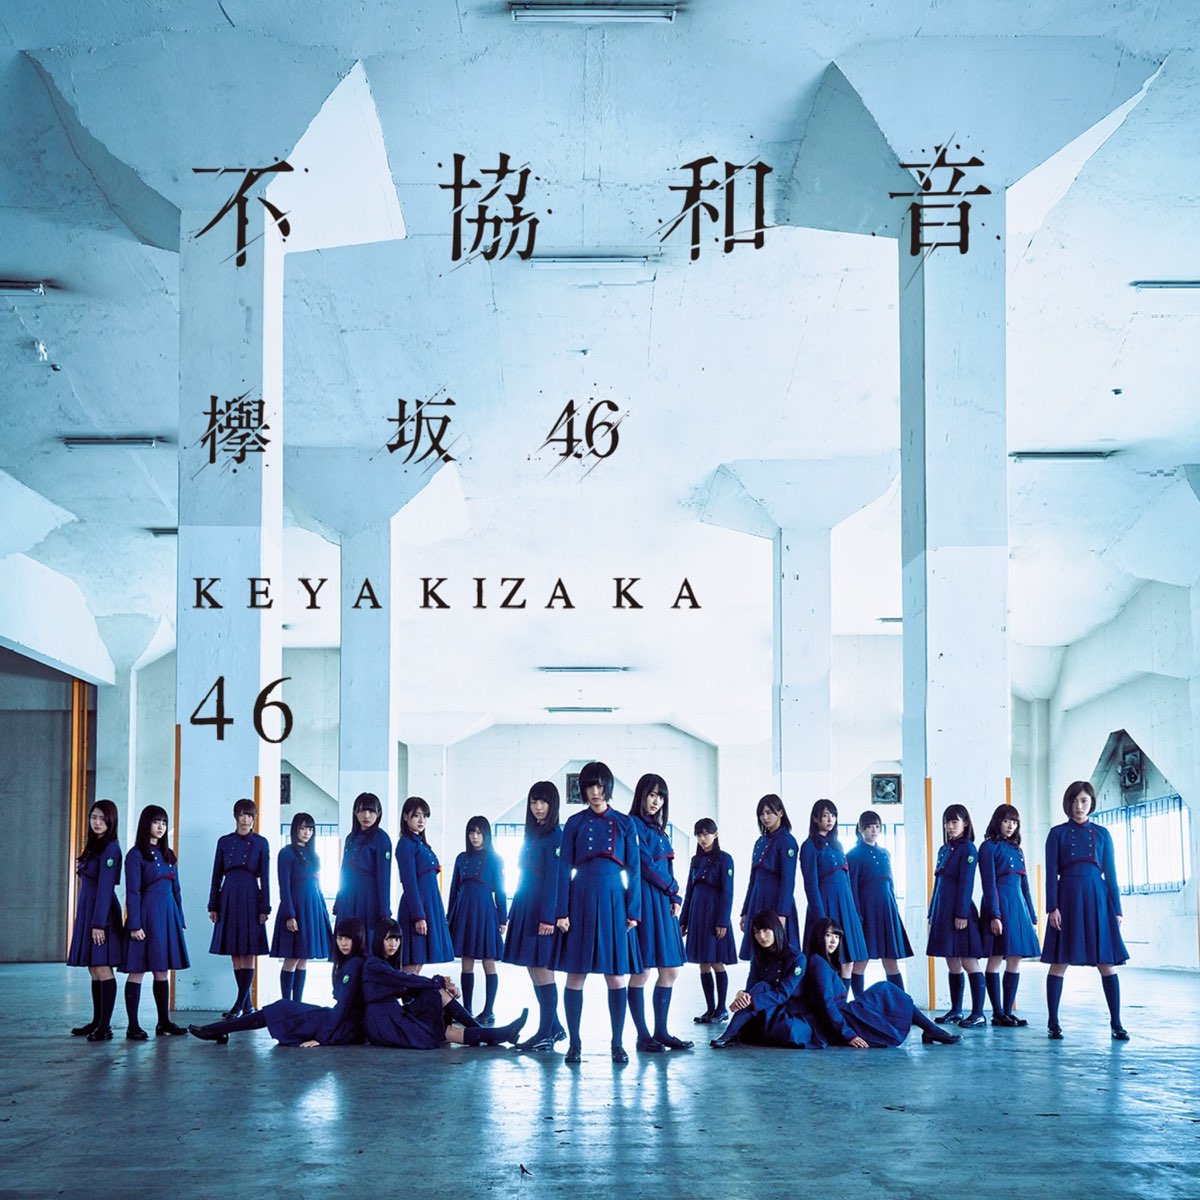 不協和音 (Special Edition) - 欅坂46のアルバム - Apple Music